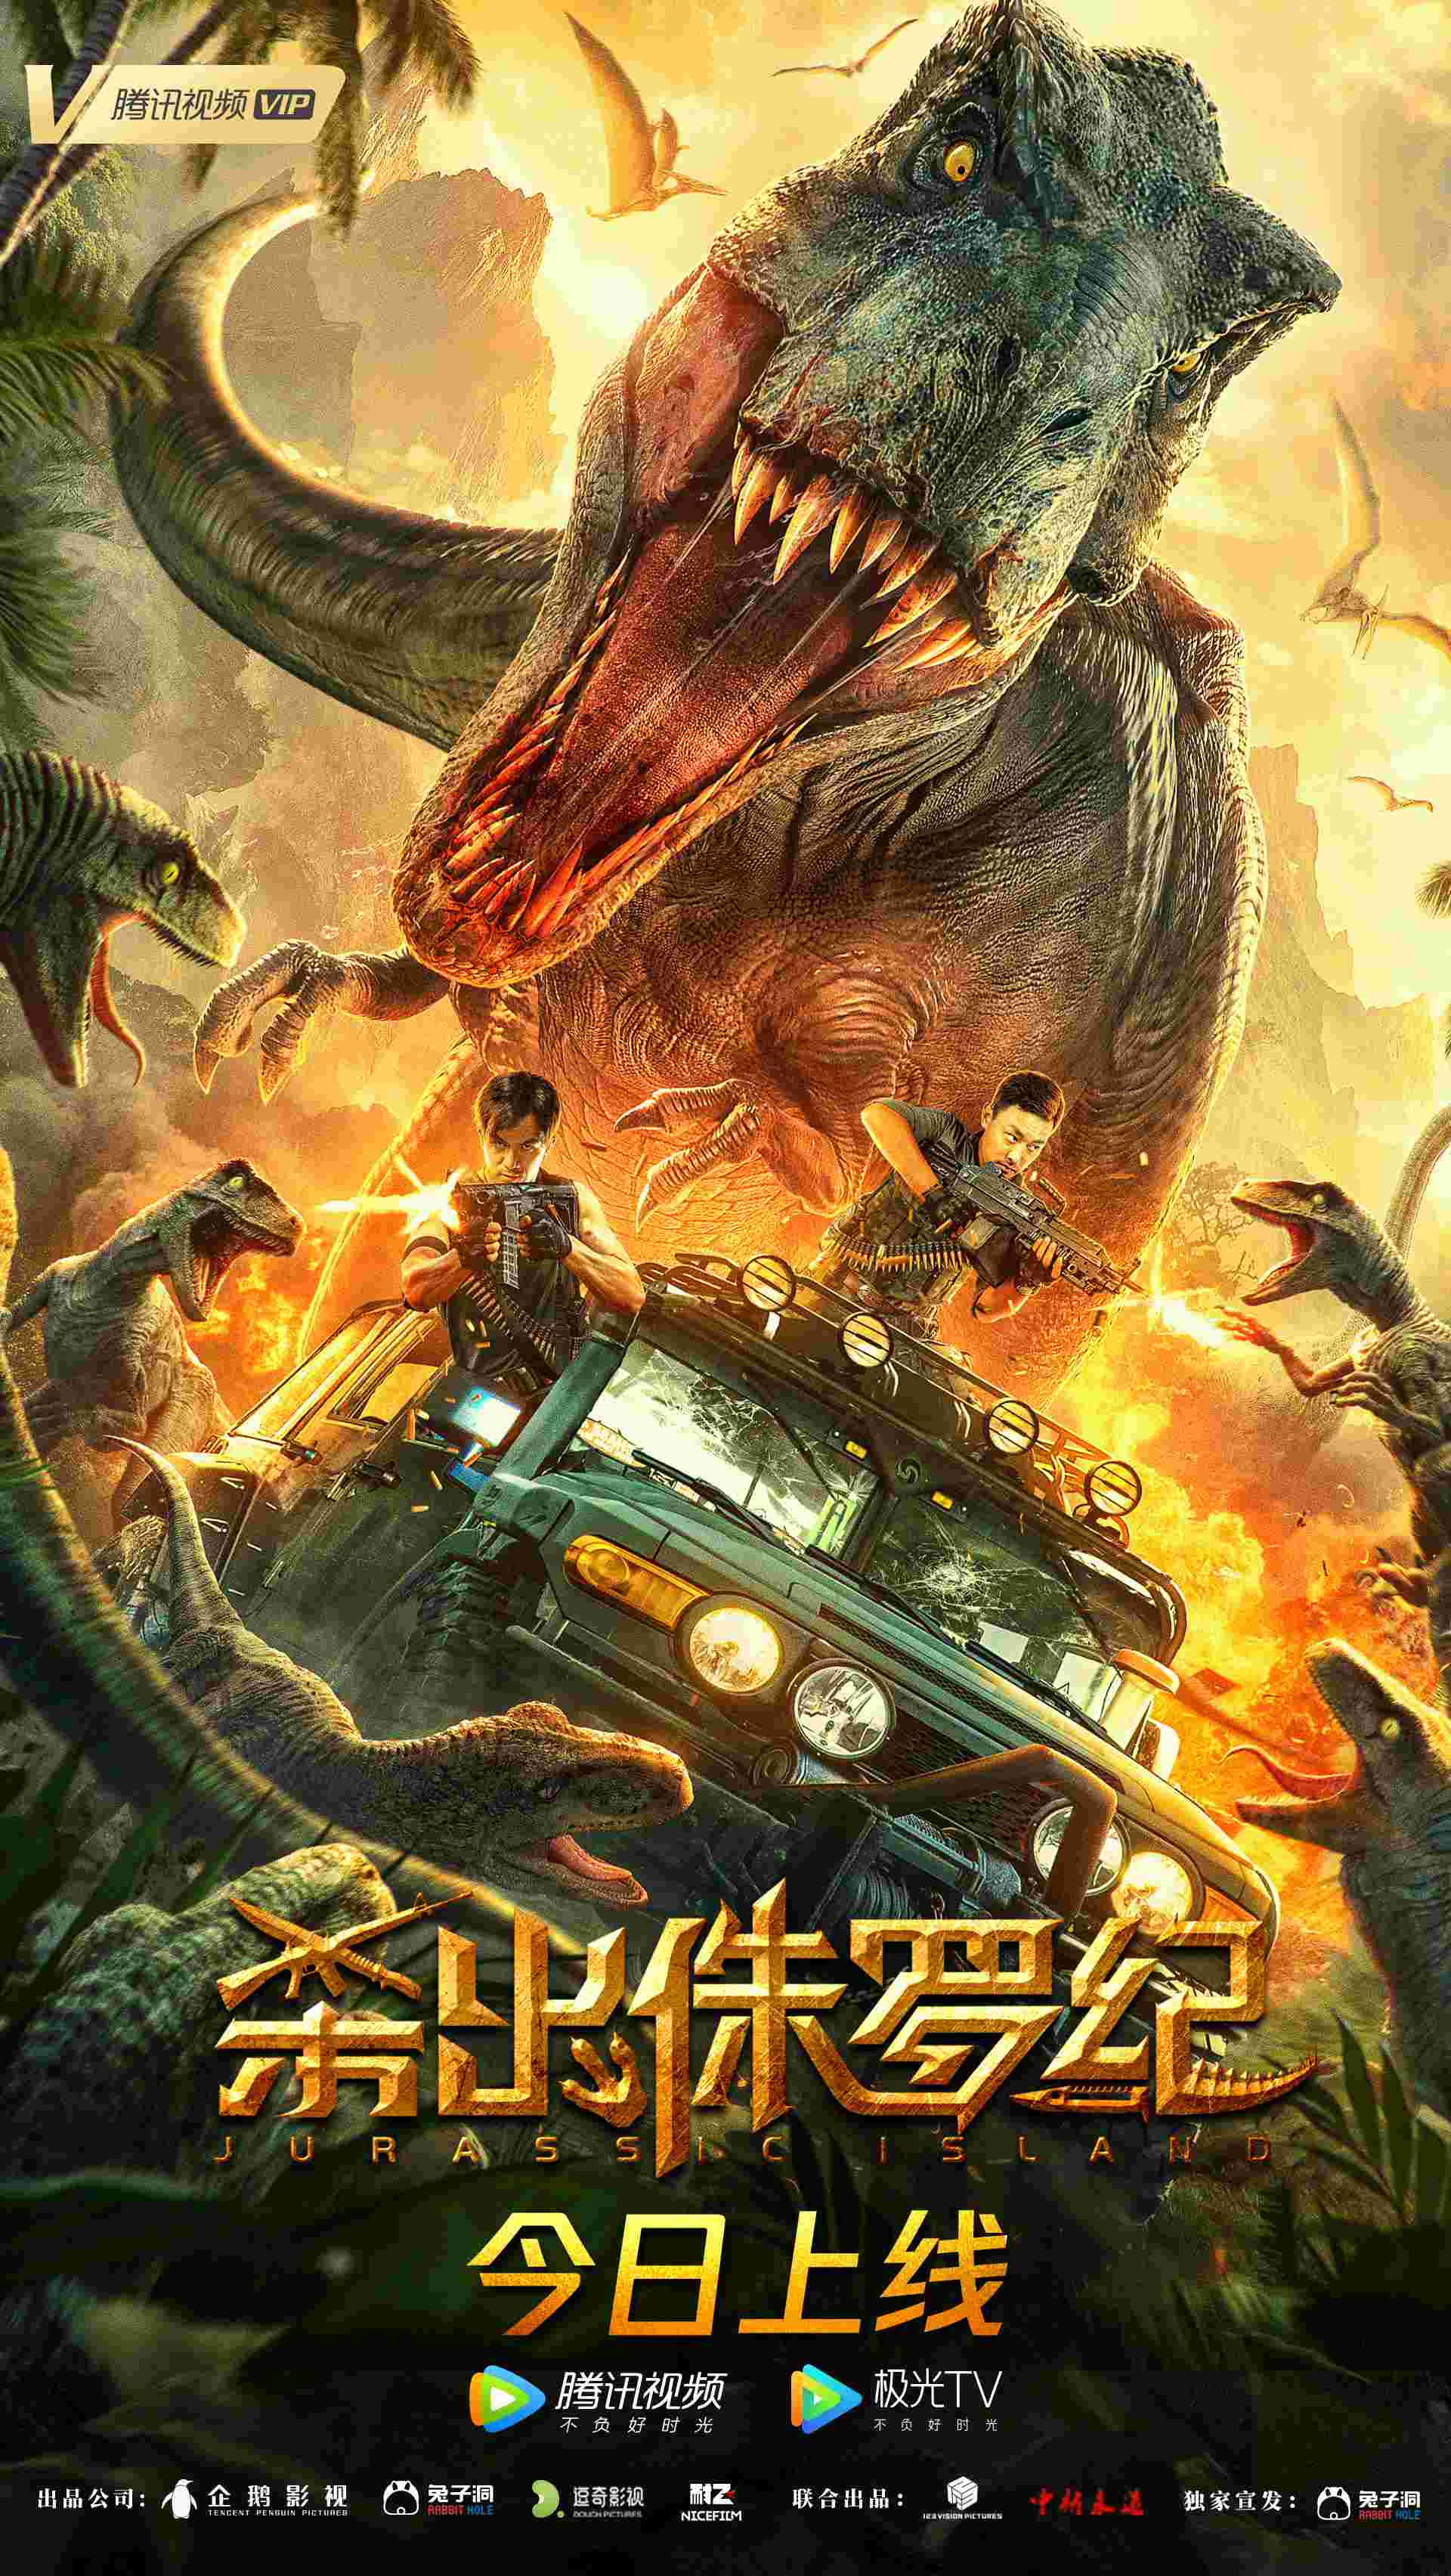 首部国产恐龙电影《杀出侏罗纪》上映